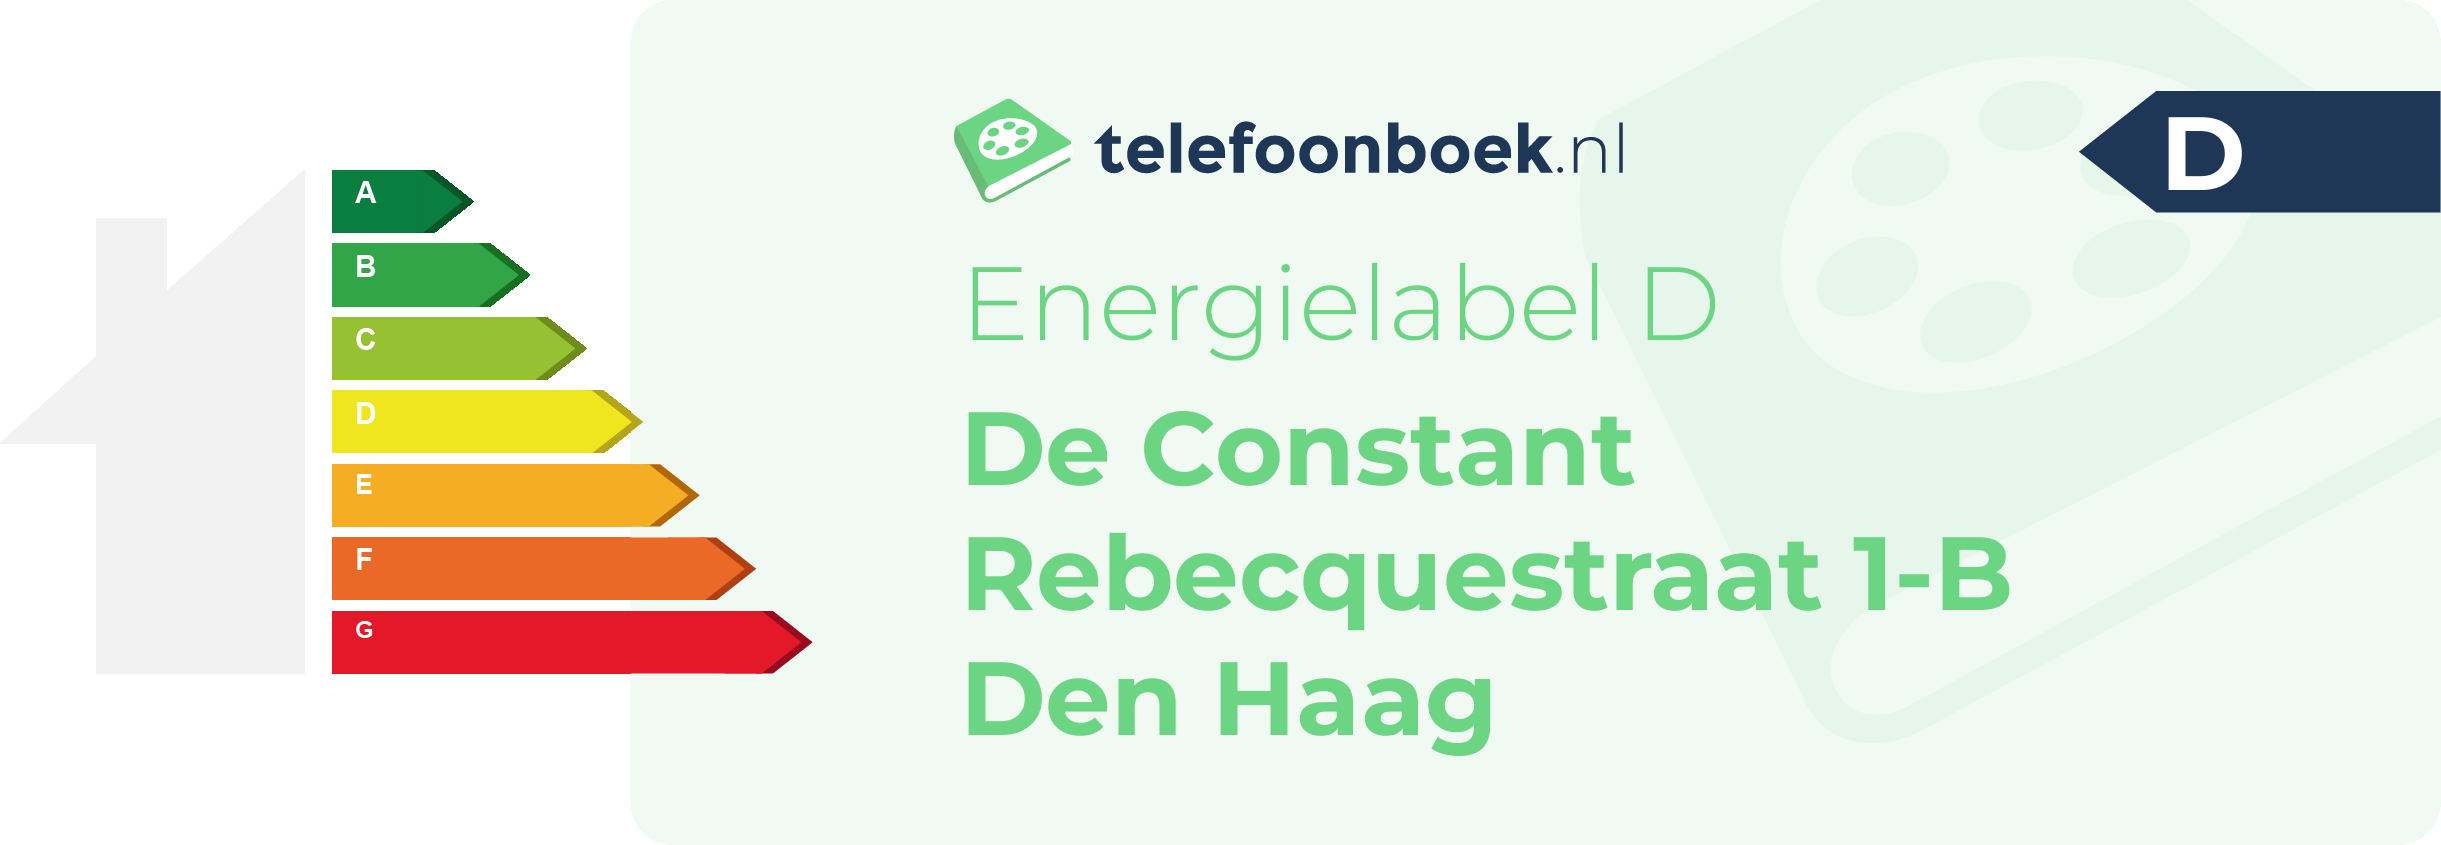 Energielabel De Constant Rebecquestraat 1-B Den Haag